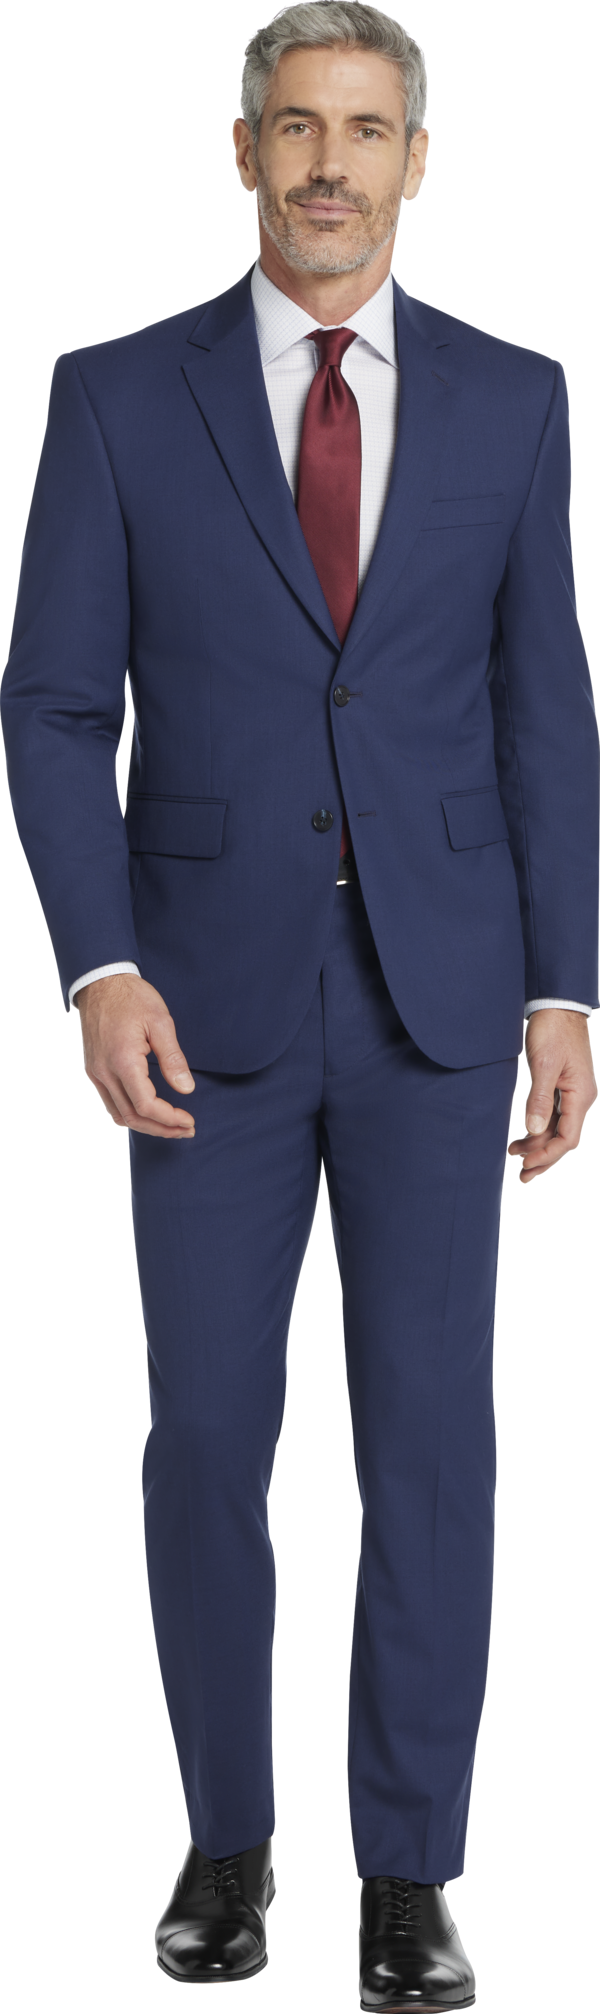 JOE Joseph Abboud Modern Fit Men's Suit Blue - Size: 34 Short - Blue - male